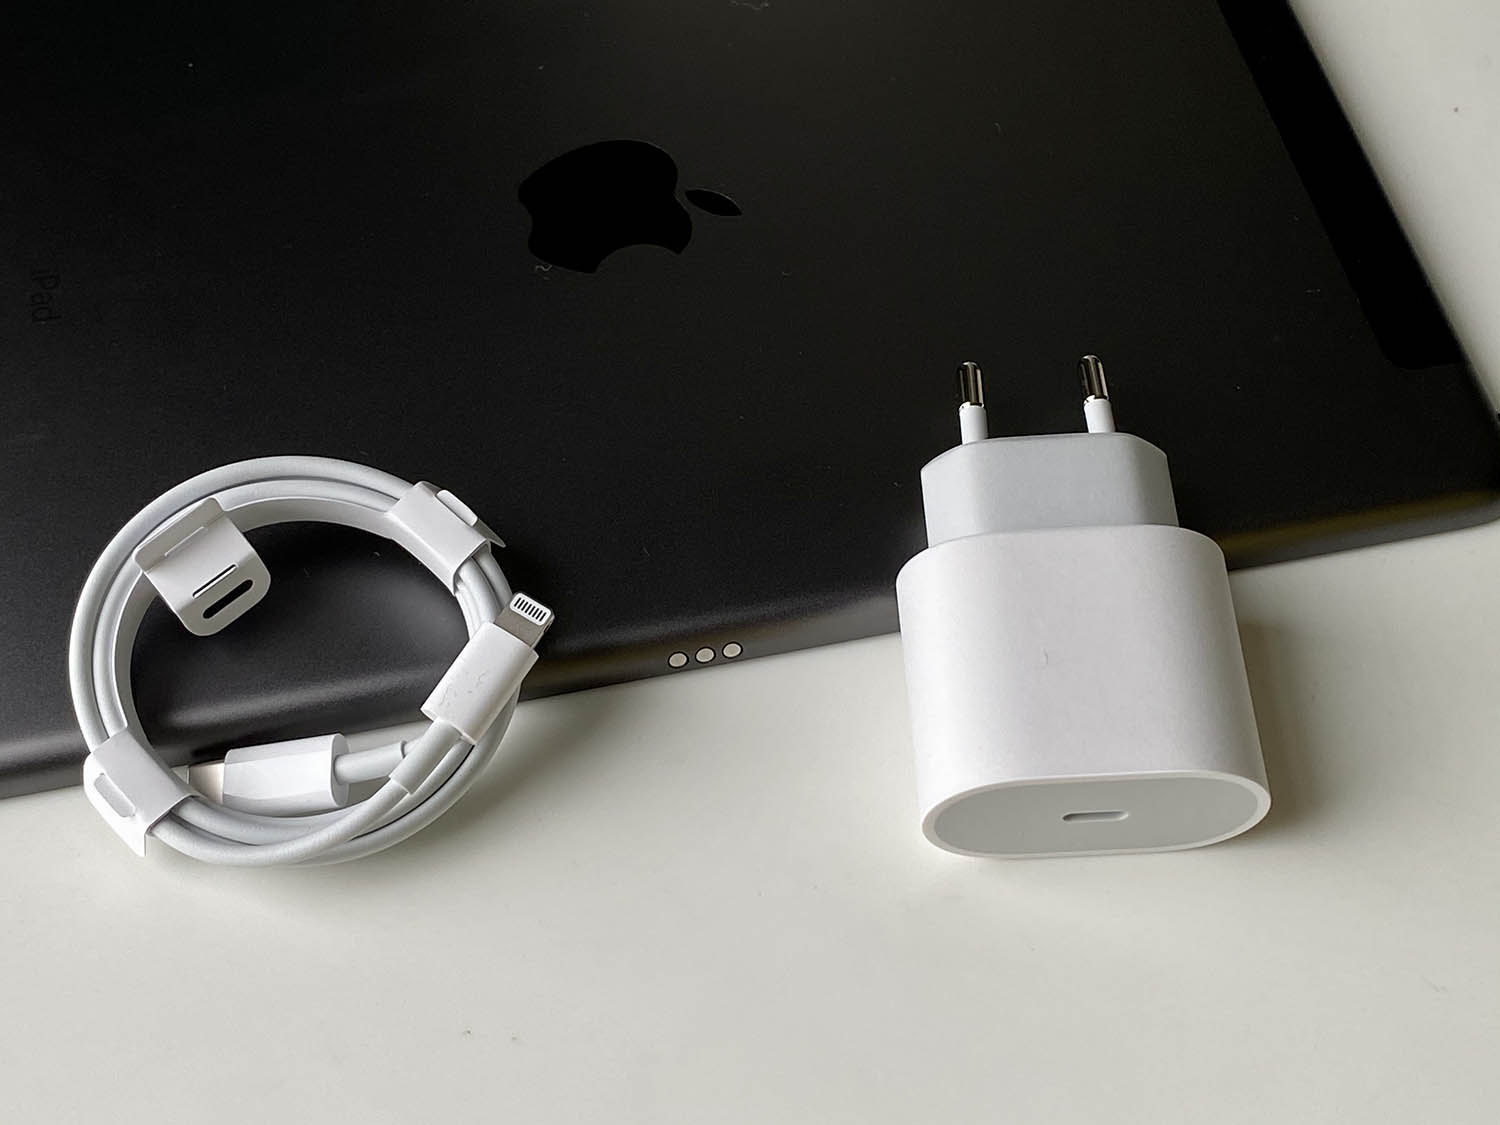 zoet Leeg de prullenbak stimuleren Volgens Apple kan 18W oplader een iPhone 12 (Pro) niet snelladen